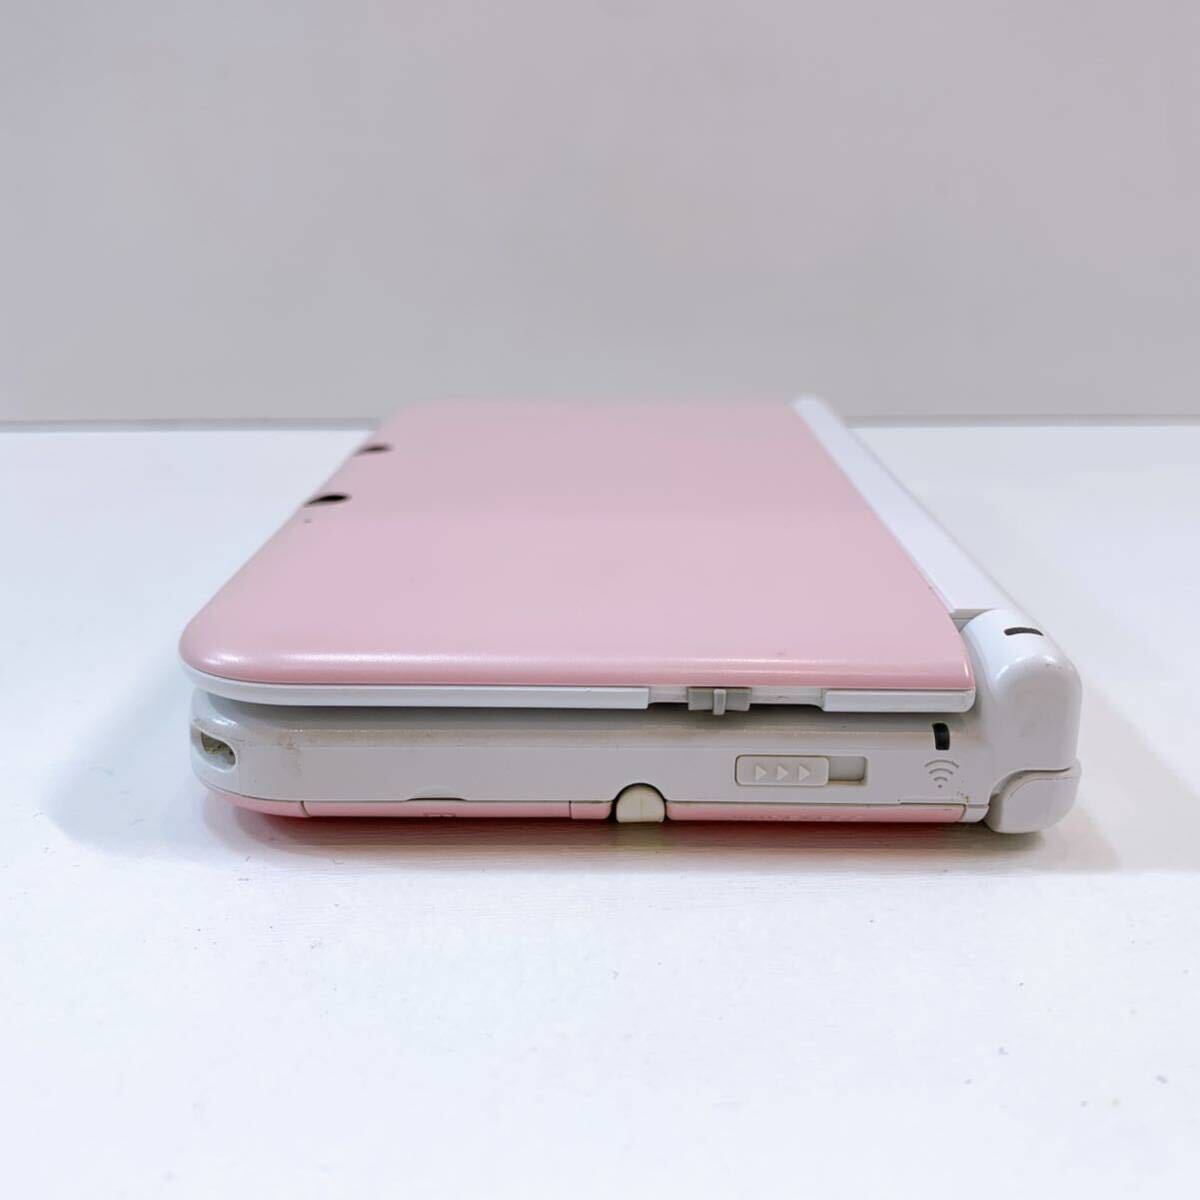 305☆中古☆ Nintendo3DS LL ピンク×ホワイト SPR-001 任天堂 ニンテンドー3DS タッチペン付き 付属品 難あり 動作確認/初期化済み 現状品_画像5